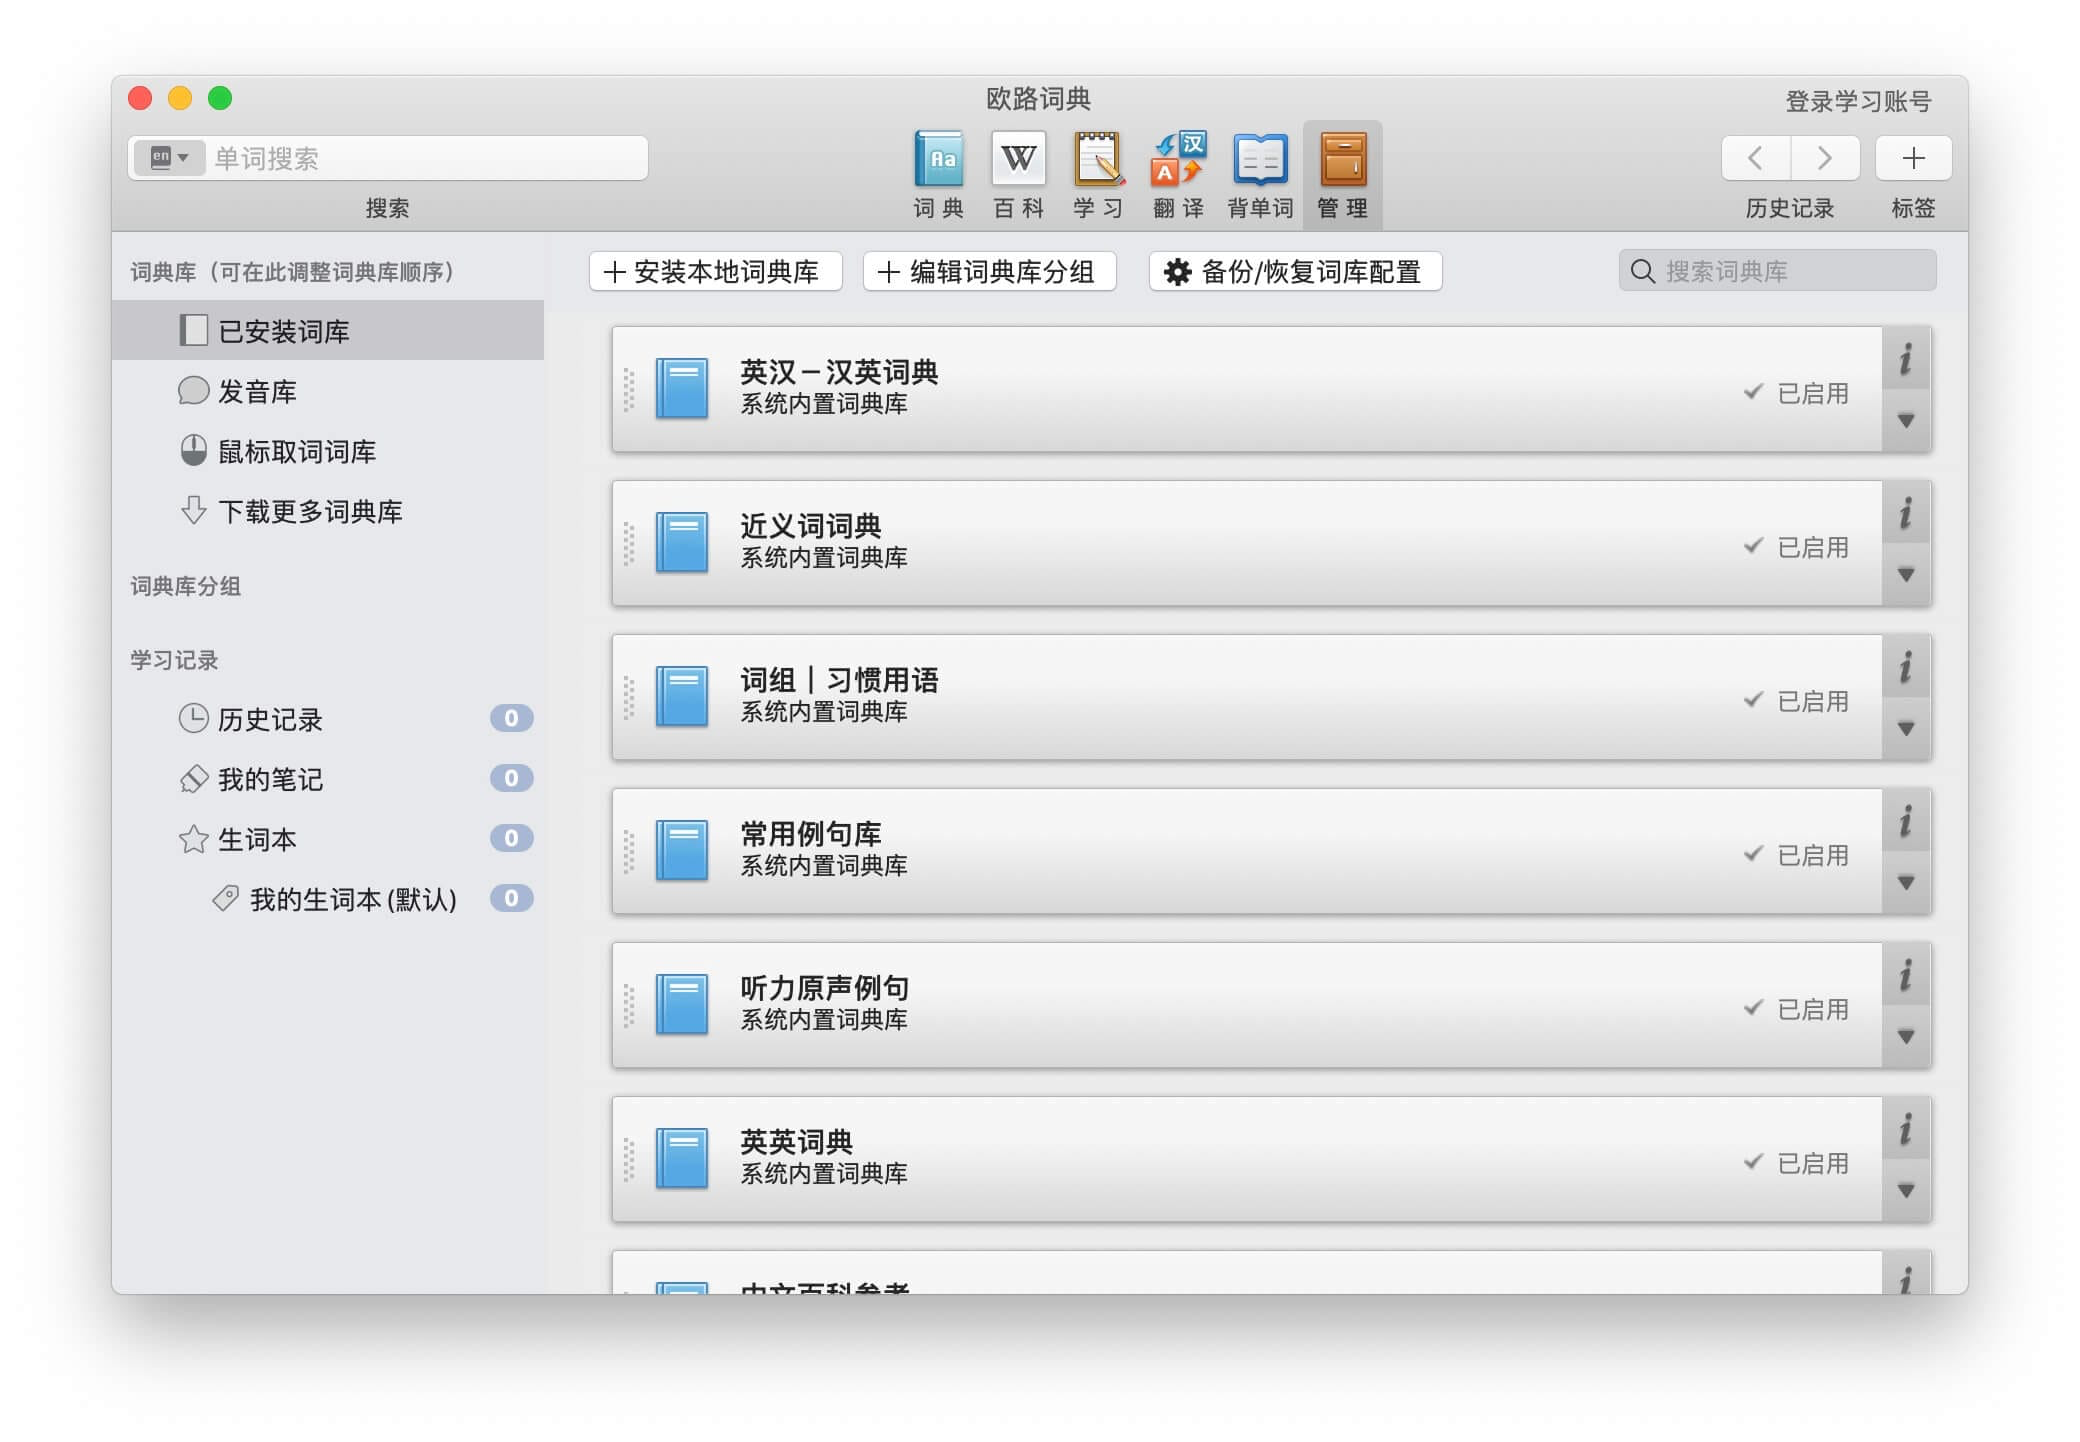 欧路词典 for Mac v4.2.3(1075) 中文破解版 强大权威的英语词典 苹果电脑